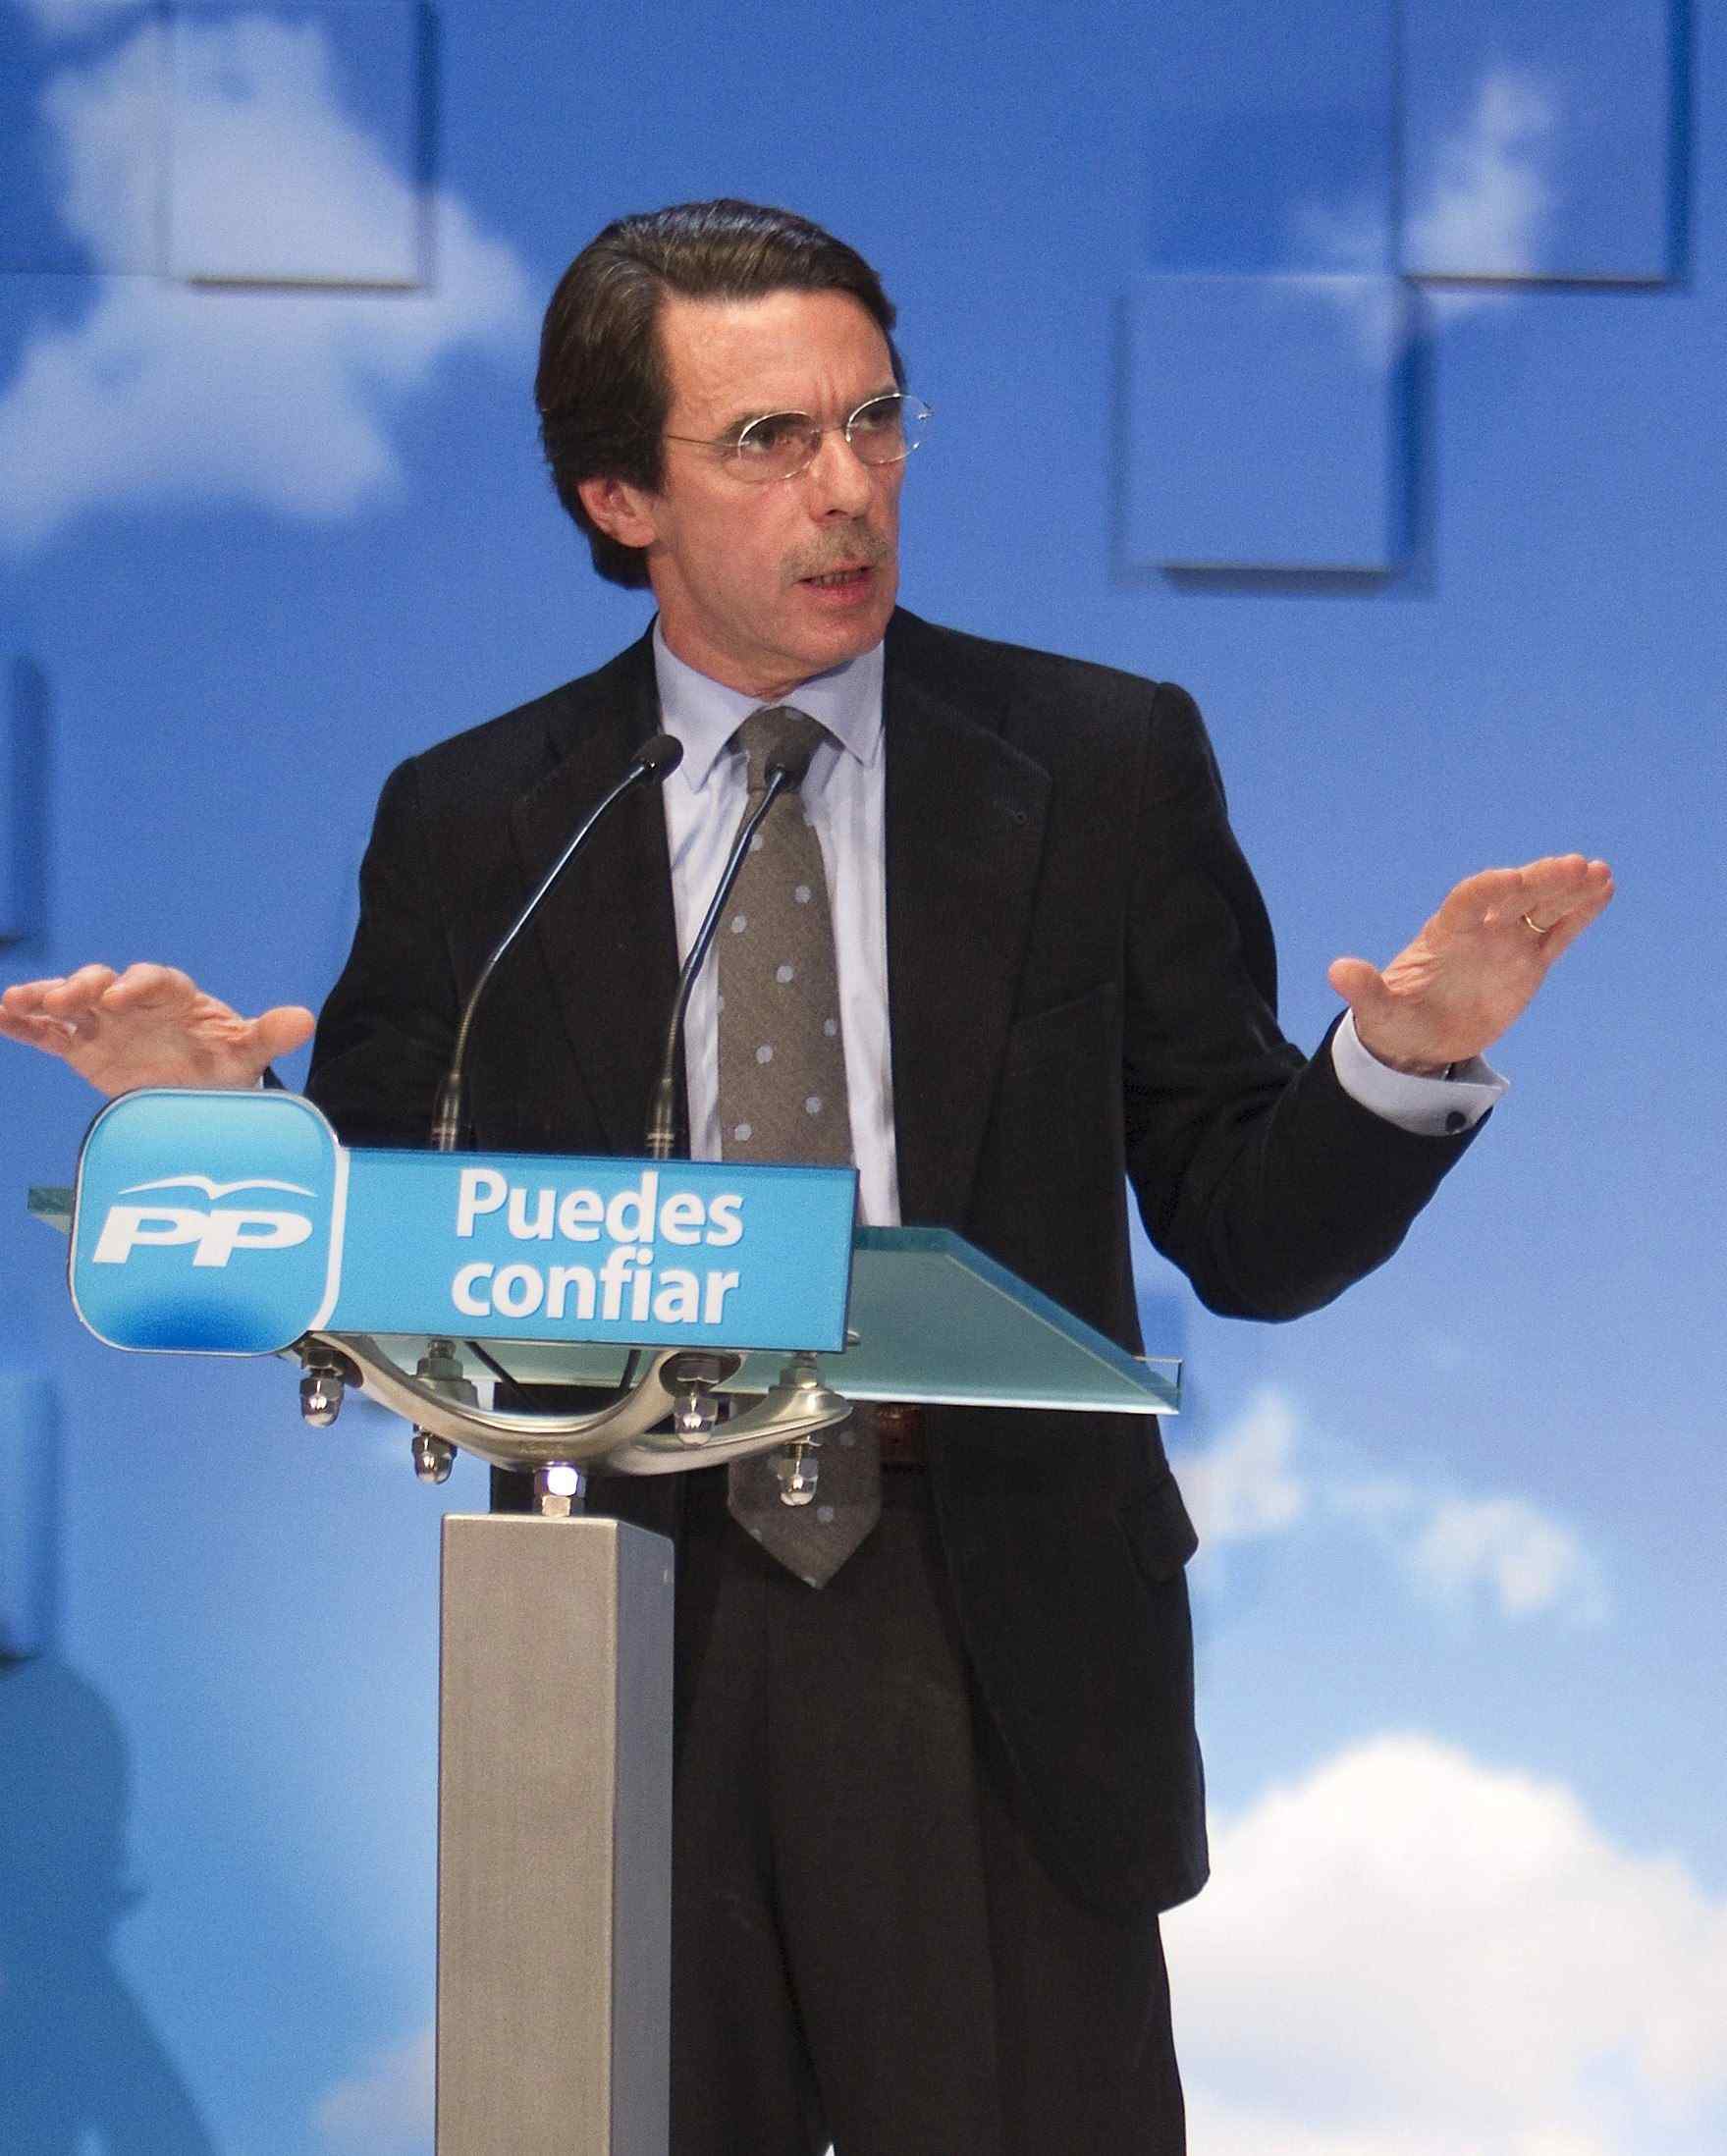 El PP deja vacante la presidencia de honor después del divorcio de Aznar